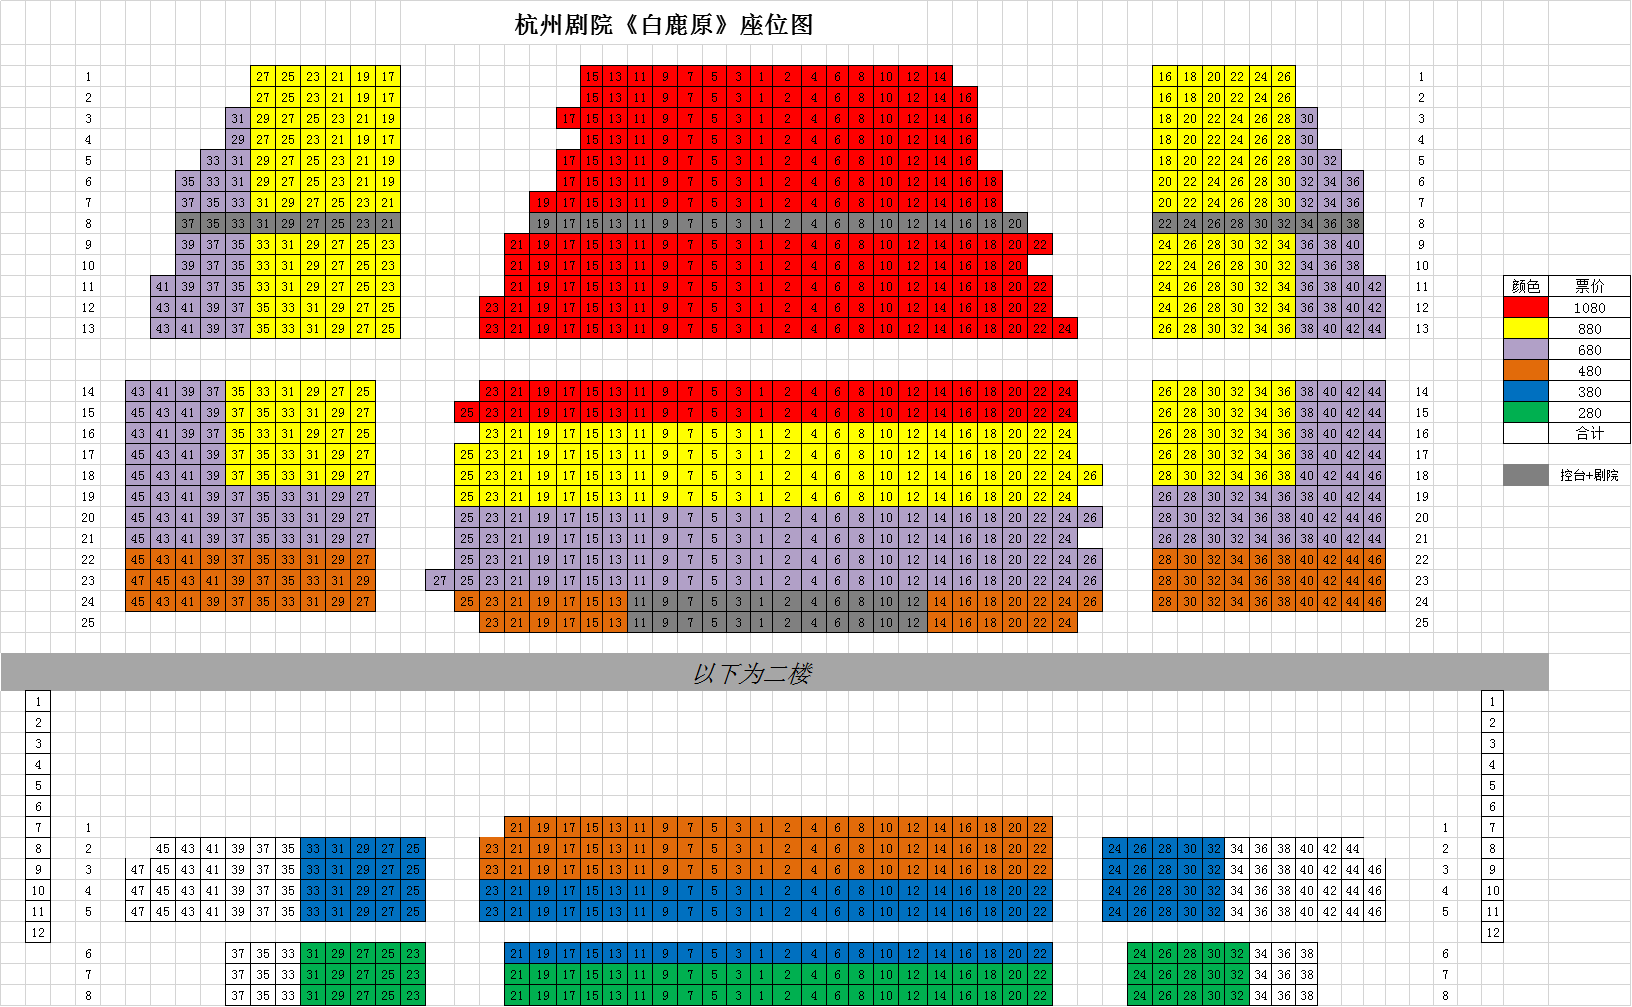 杭州剧院座位图详细图片